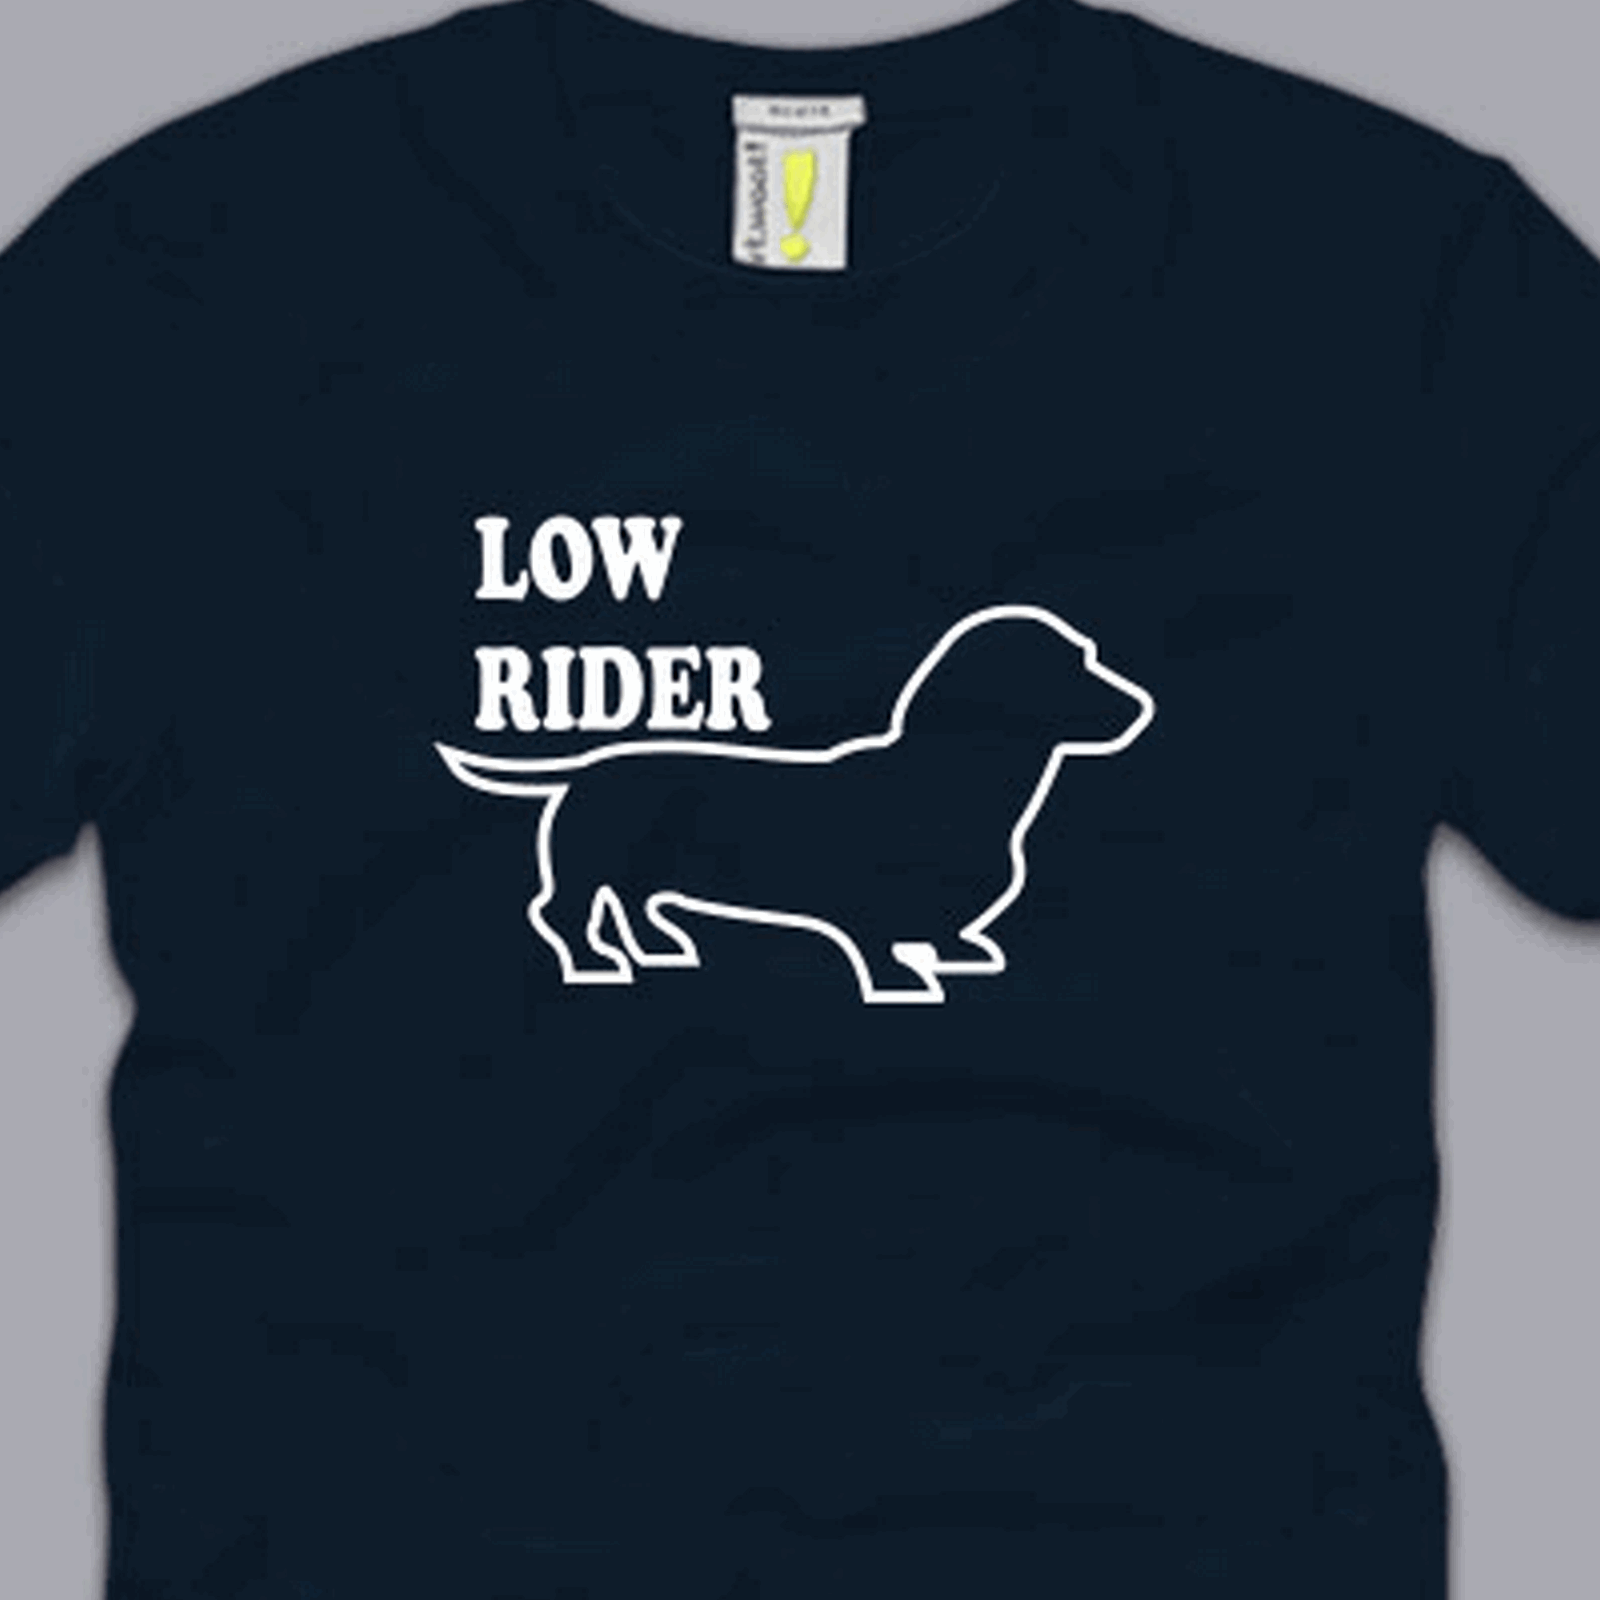 Lowrider T Shirt Funny Dachshund Weiner Wiener Dog Puppy Humor Low Rider Tee